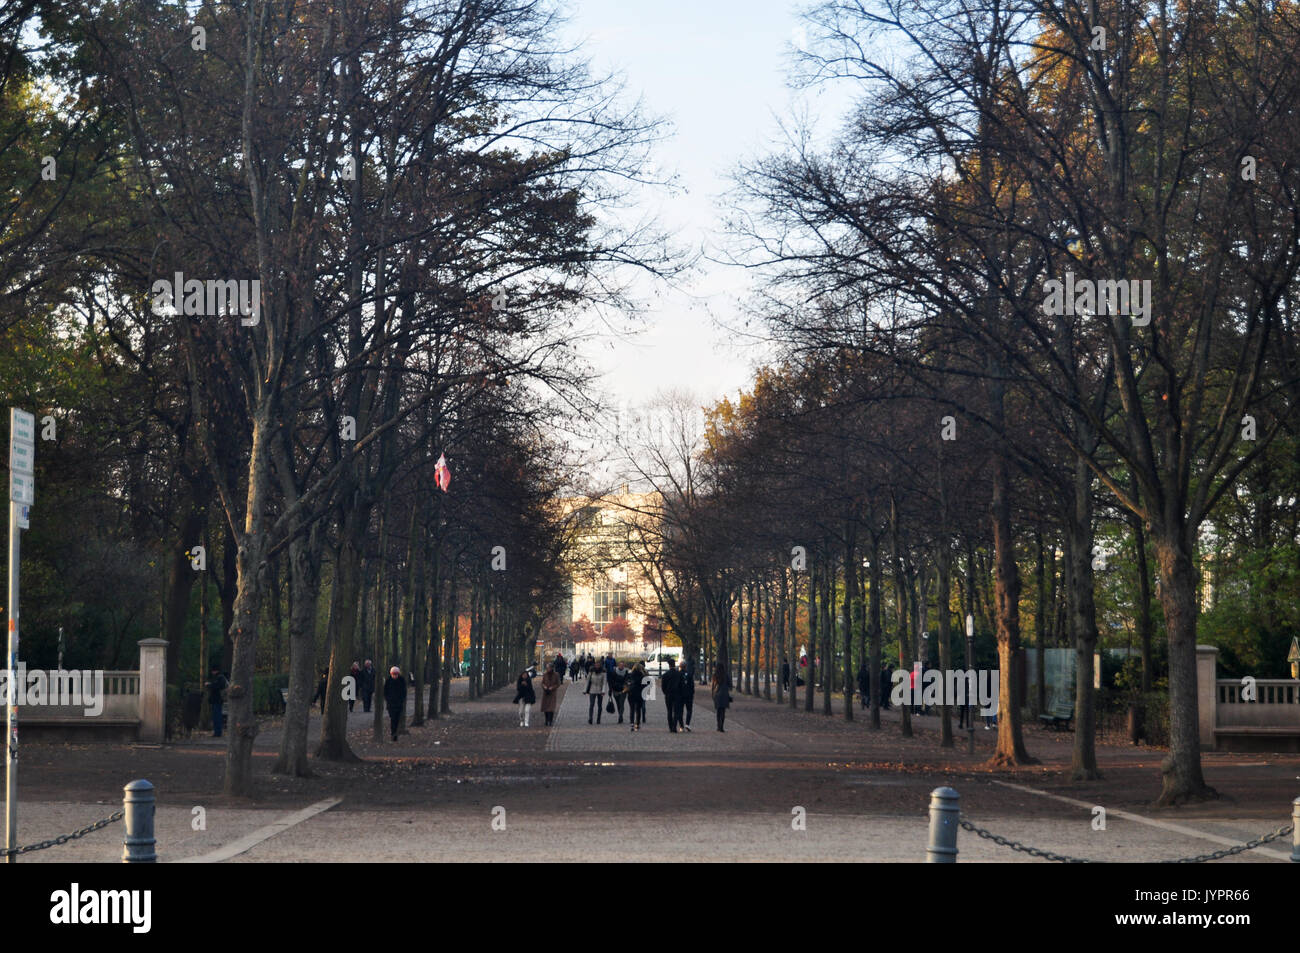 Deutsche und Reisende Leute gehen in den Garten und einen öffentlichen Park in Berlin in Berlin, Deutschland Stockfoto